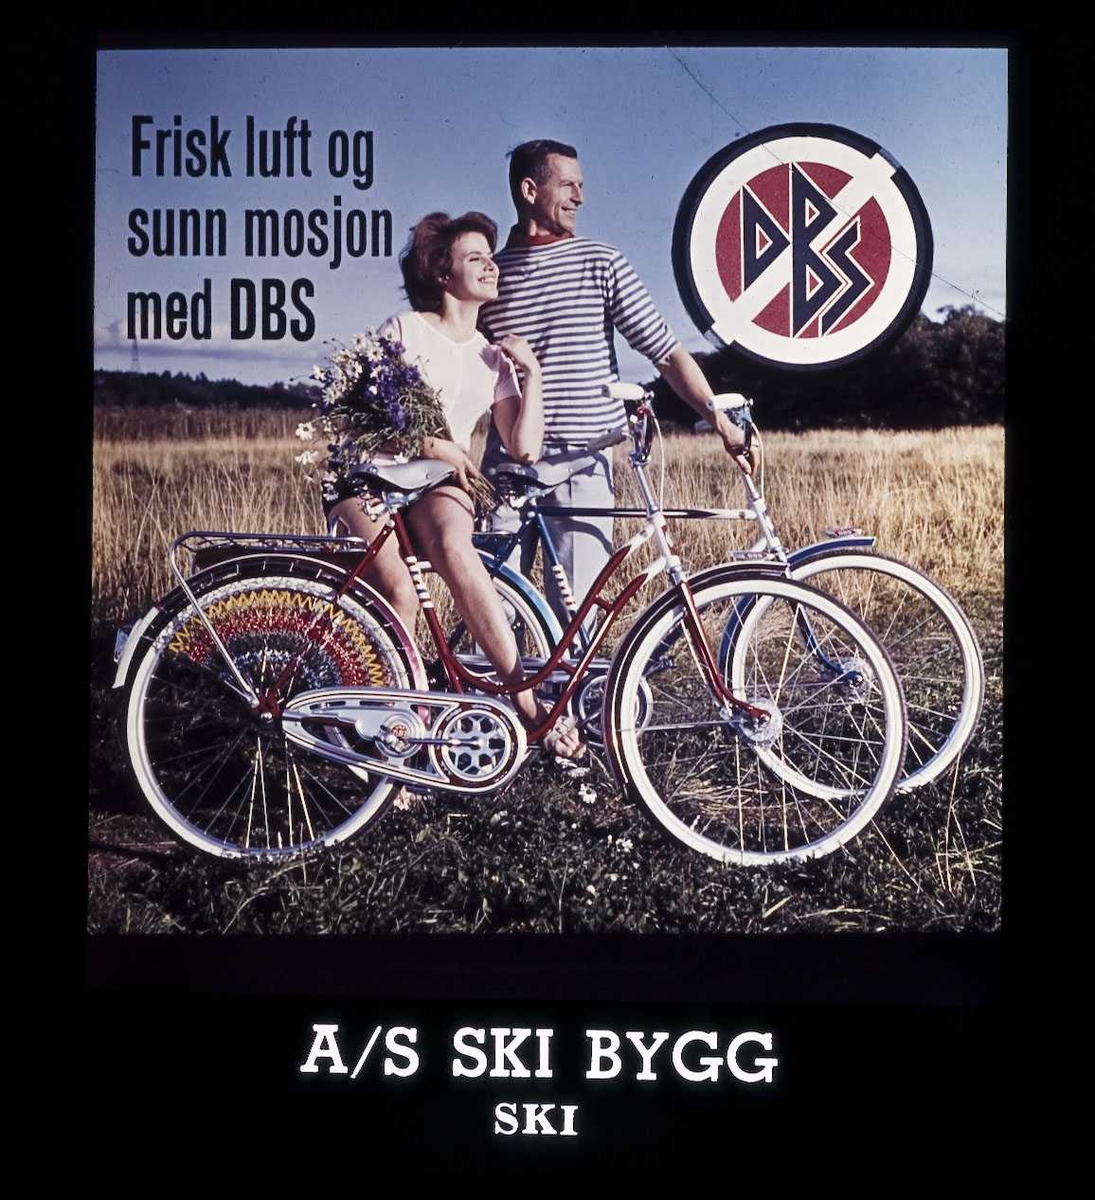 Kinoreklame fra Ski. Frisk luft og sunn mosjon med DBS (sykkel). A.S Ski Bygg